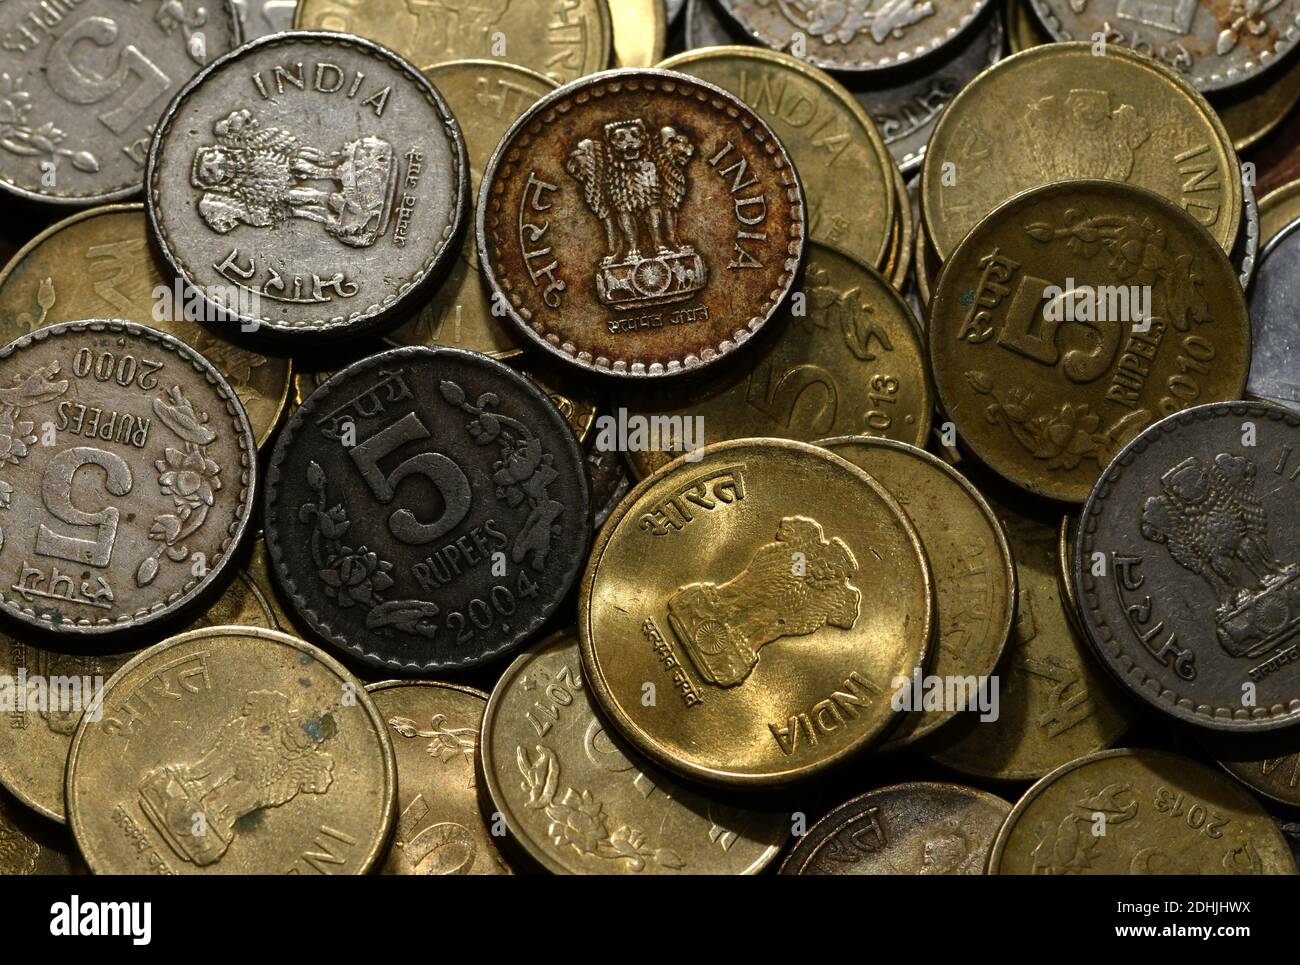 Images de pièces indiennes. En Inde, les pièces sont actuellement émises en valeurs unitaires d'une roupie, de deux roupies et de cinq roupies,10 roupies. Banque D'Images